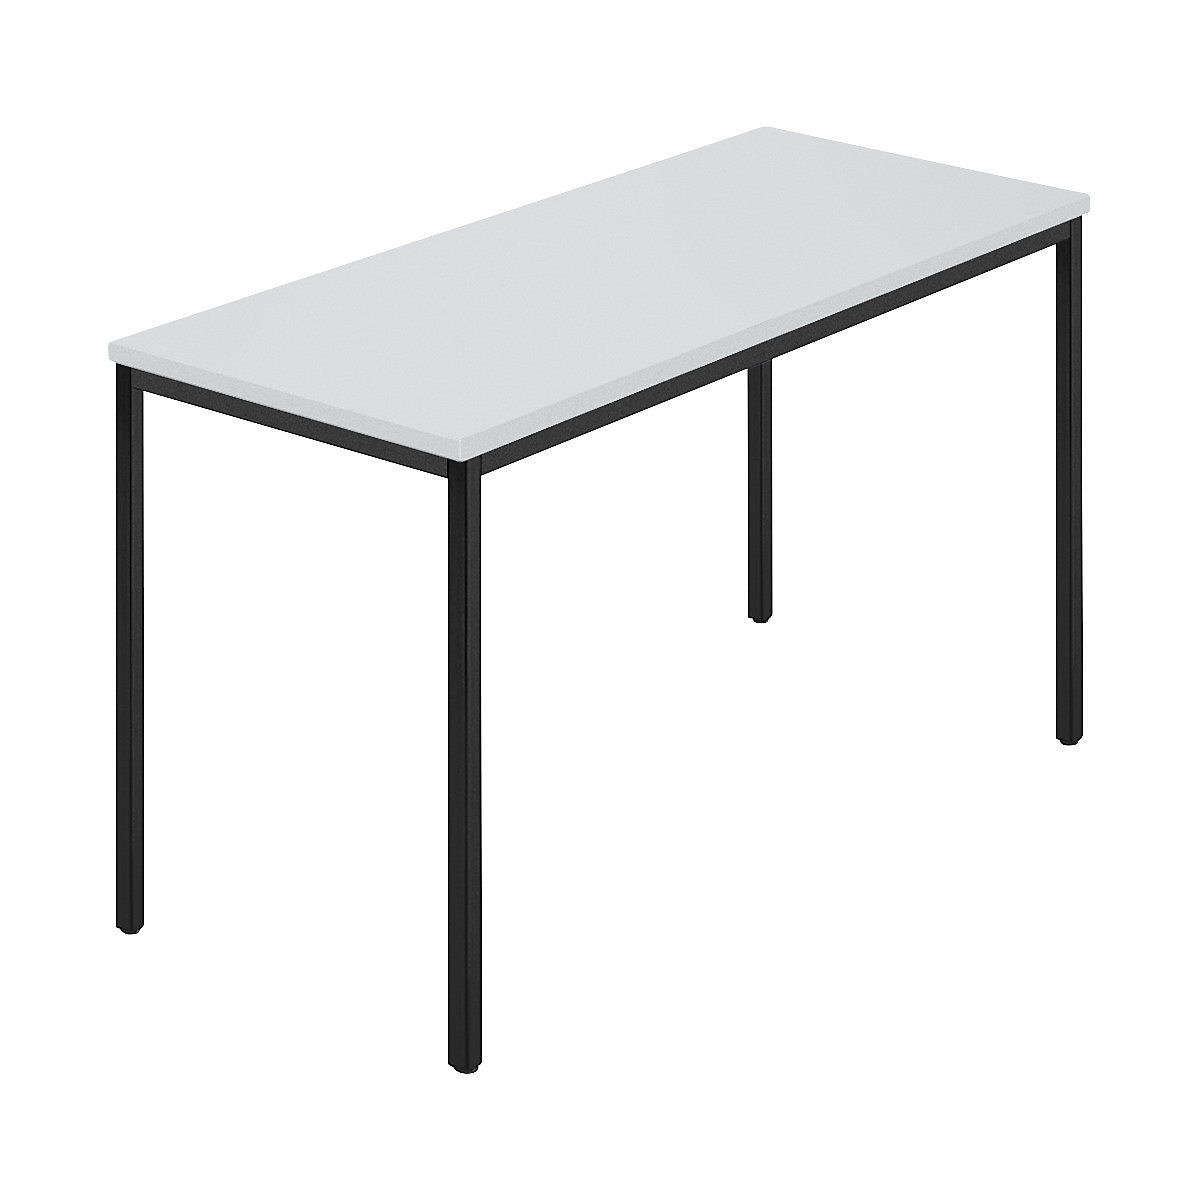 Pravokutni stol, presvučena četverokutna cijev, ŠxD 1200 x 600 mm, u sivoj / antracit boji-6